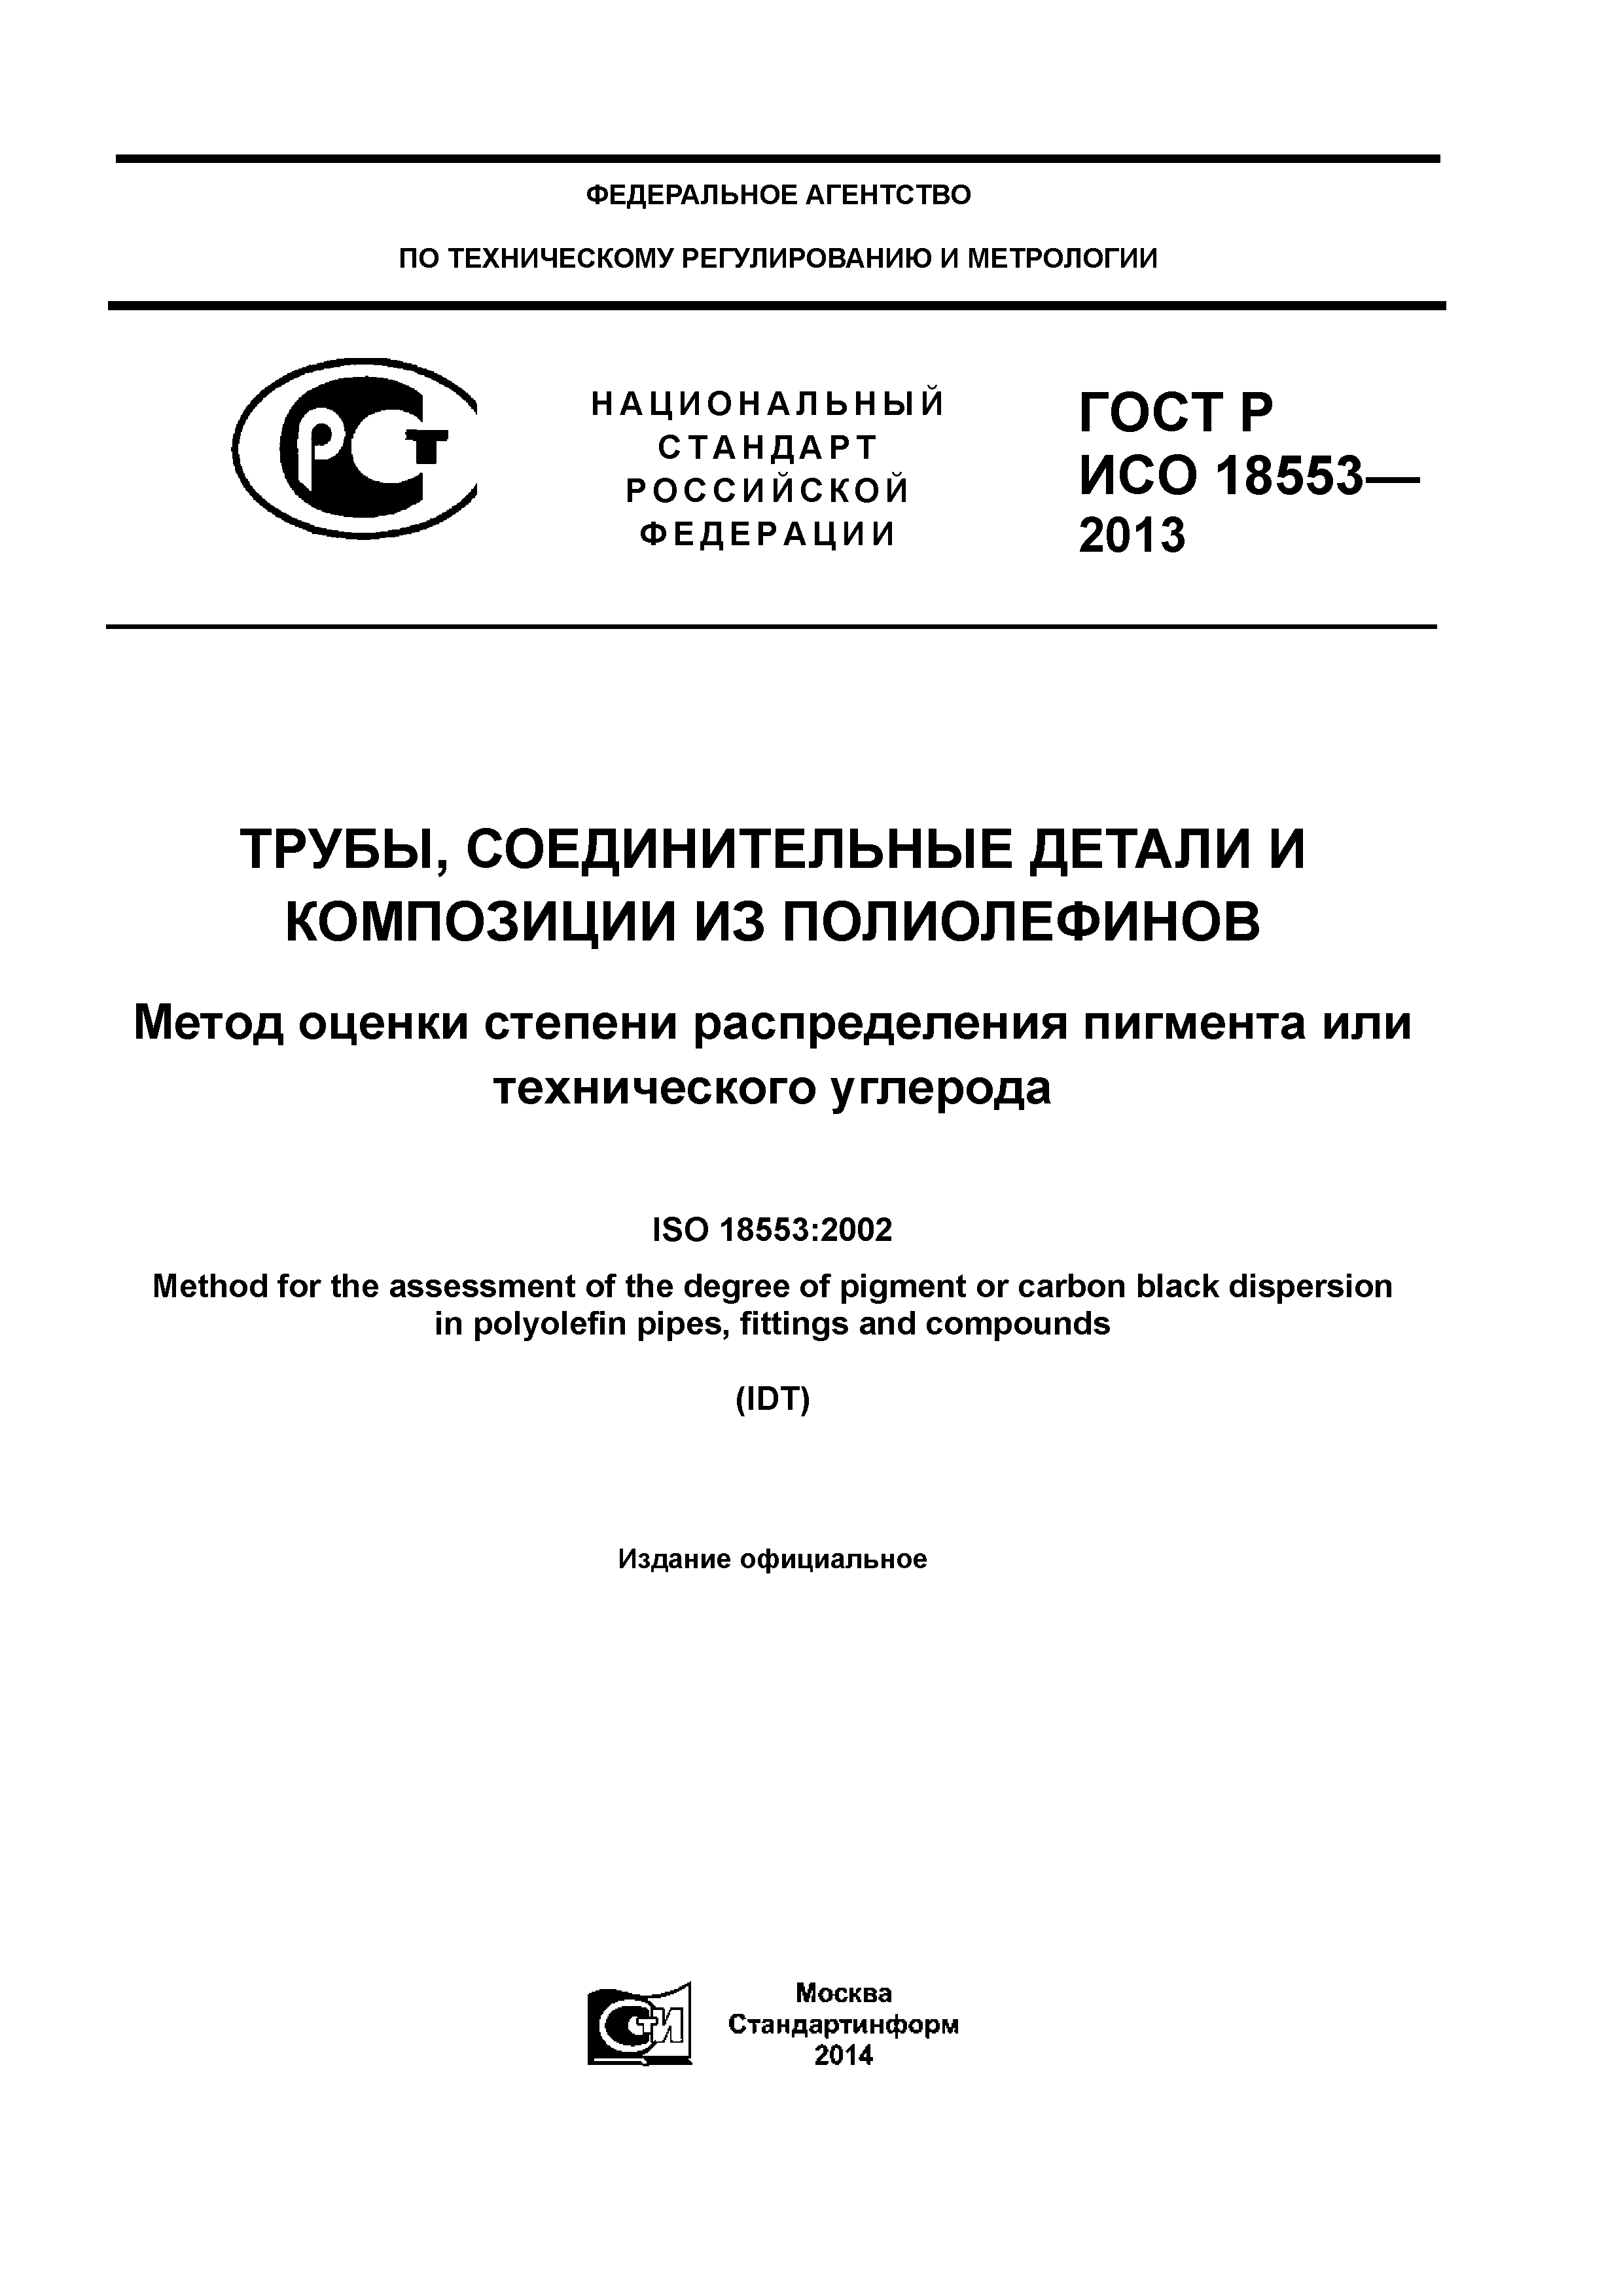 ГОСТ Р ИСО 18553-2013